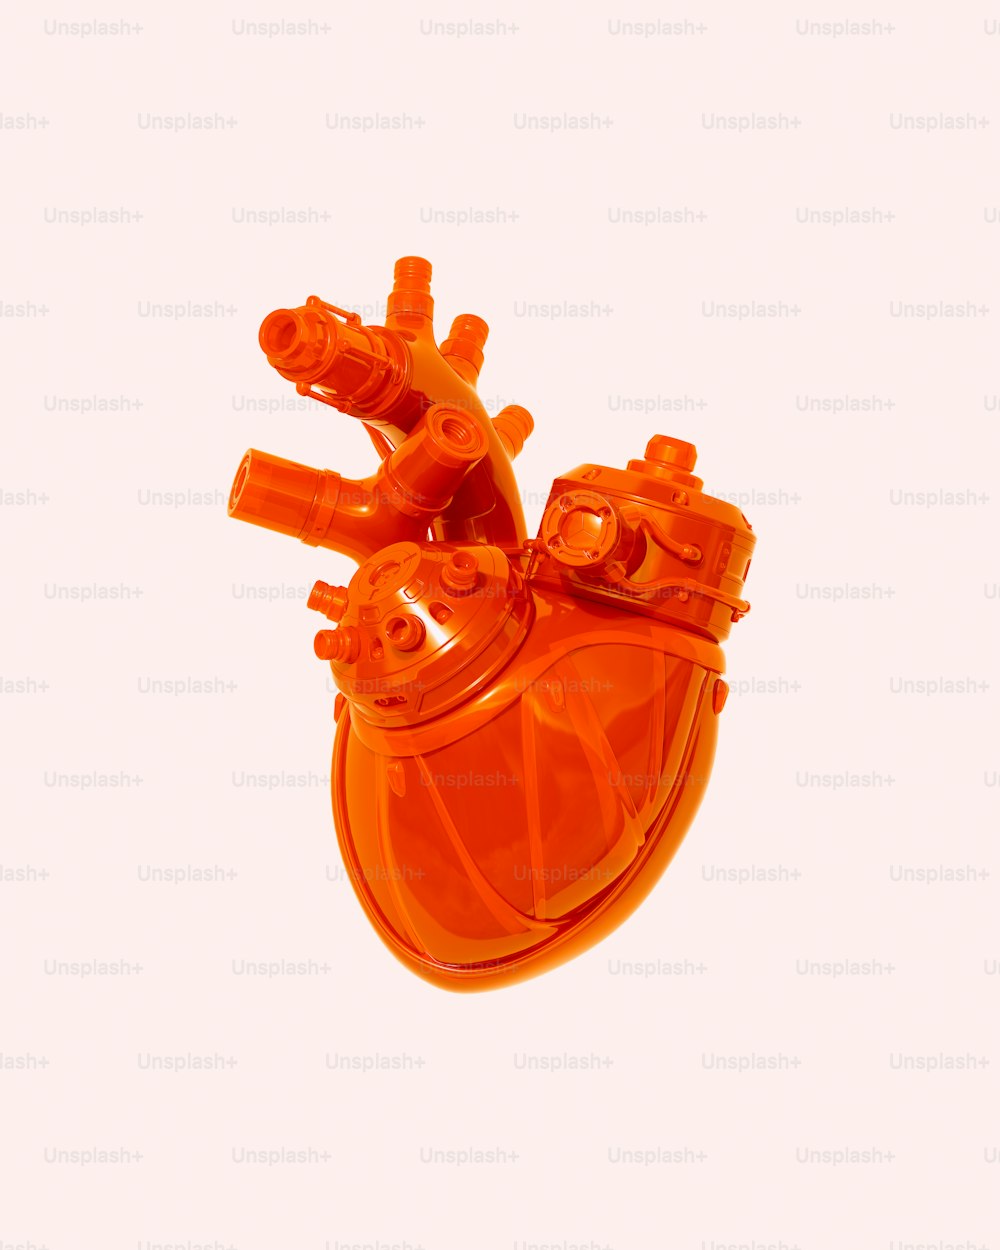 Un primer plano de un objeto naranja en forma de corazón